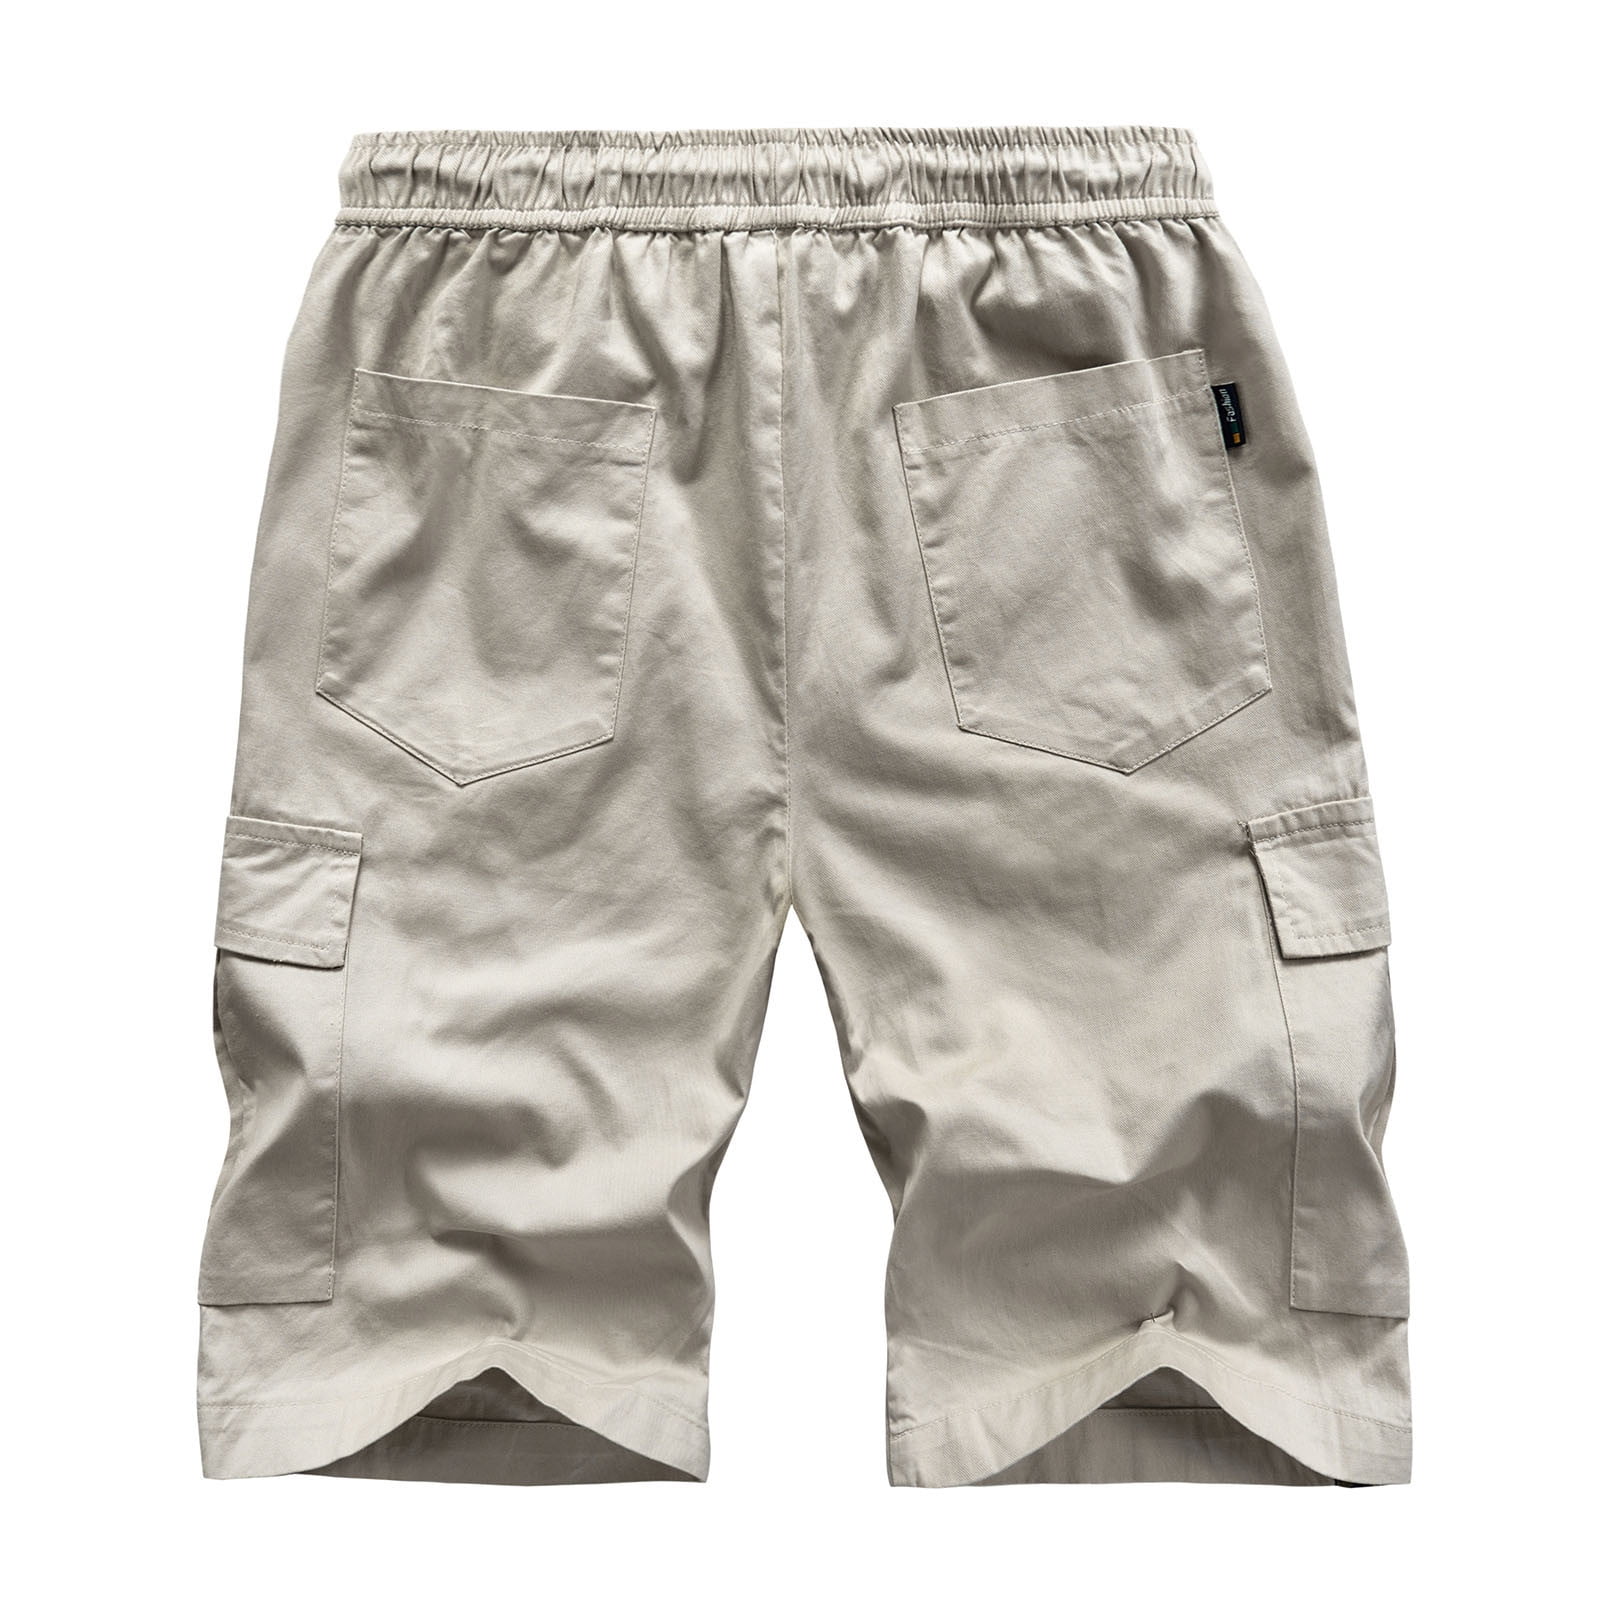 BKK TerraTex Fabric Quick Dry Fishing Shorts CARGO-QD Camouflage